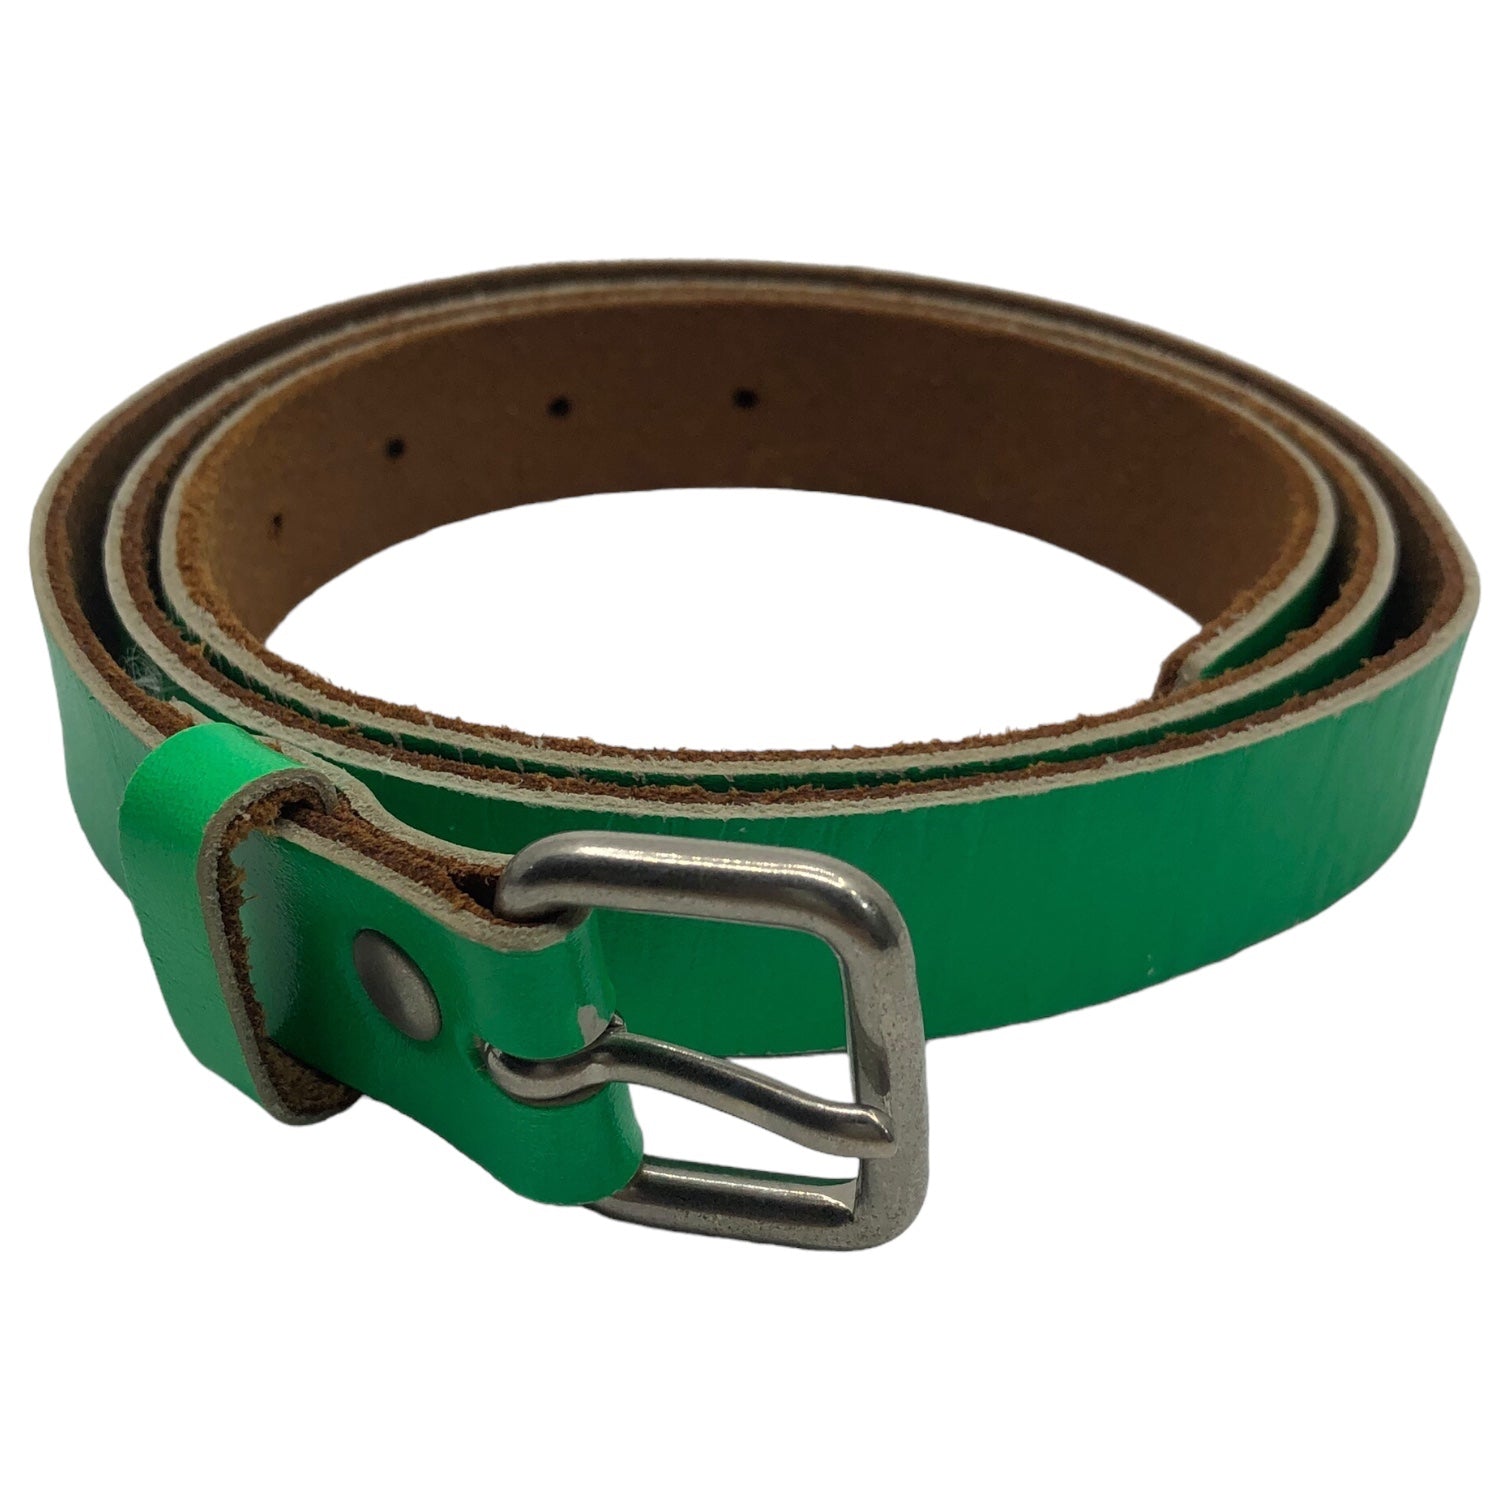 COMME des GARCONS HOMME PLUS(コムデギャルソンオムプリュス) green color leather belt グリーンカラー レザー ベルト PF-K304 S グリーン 本革